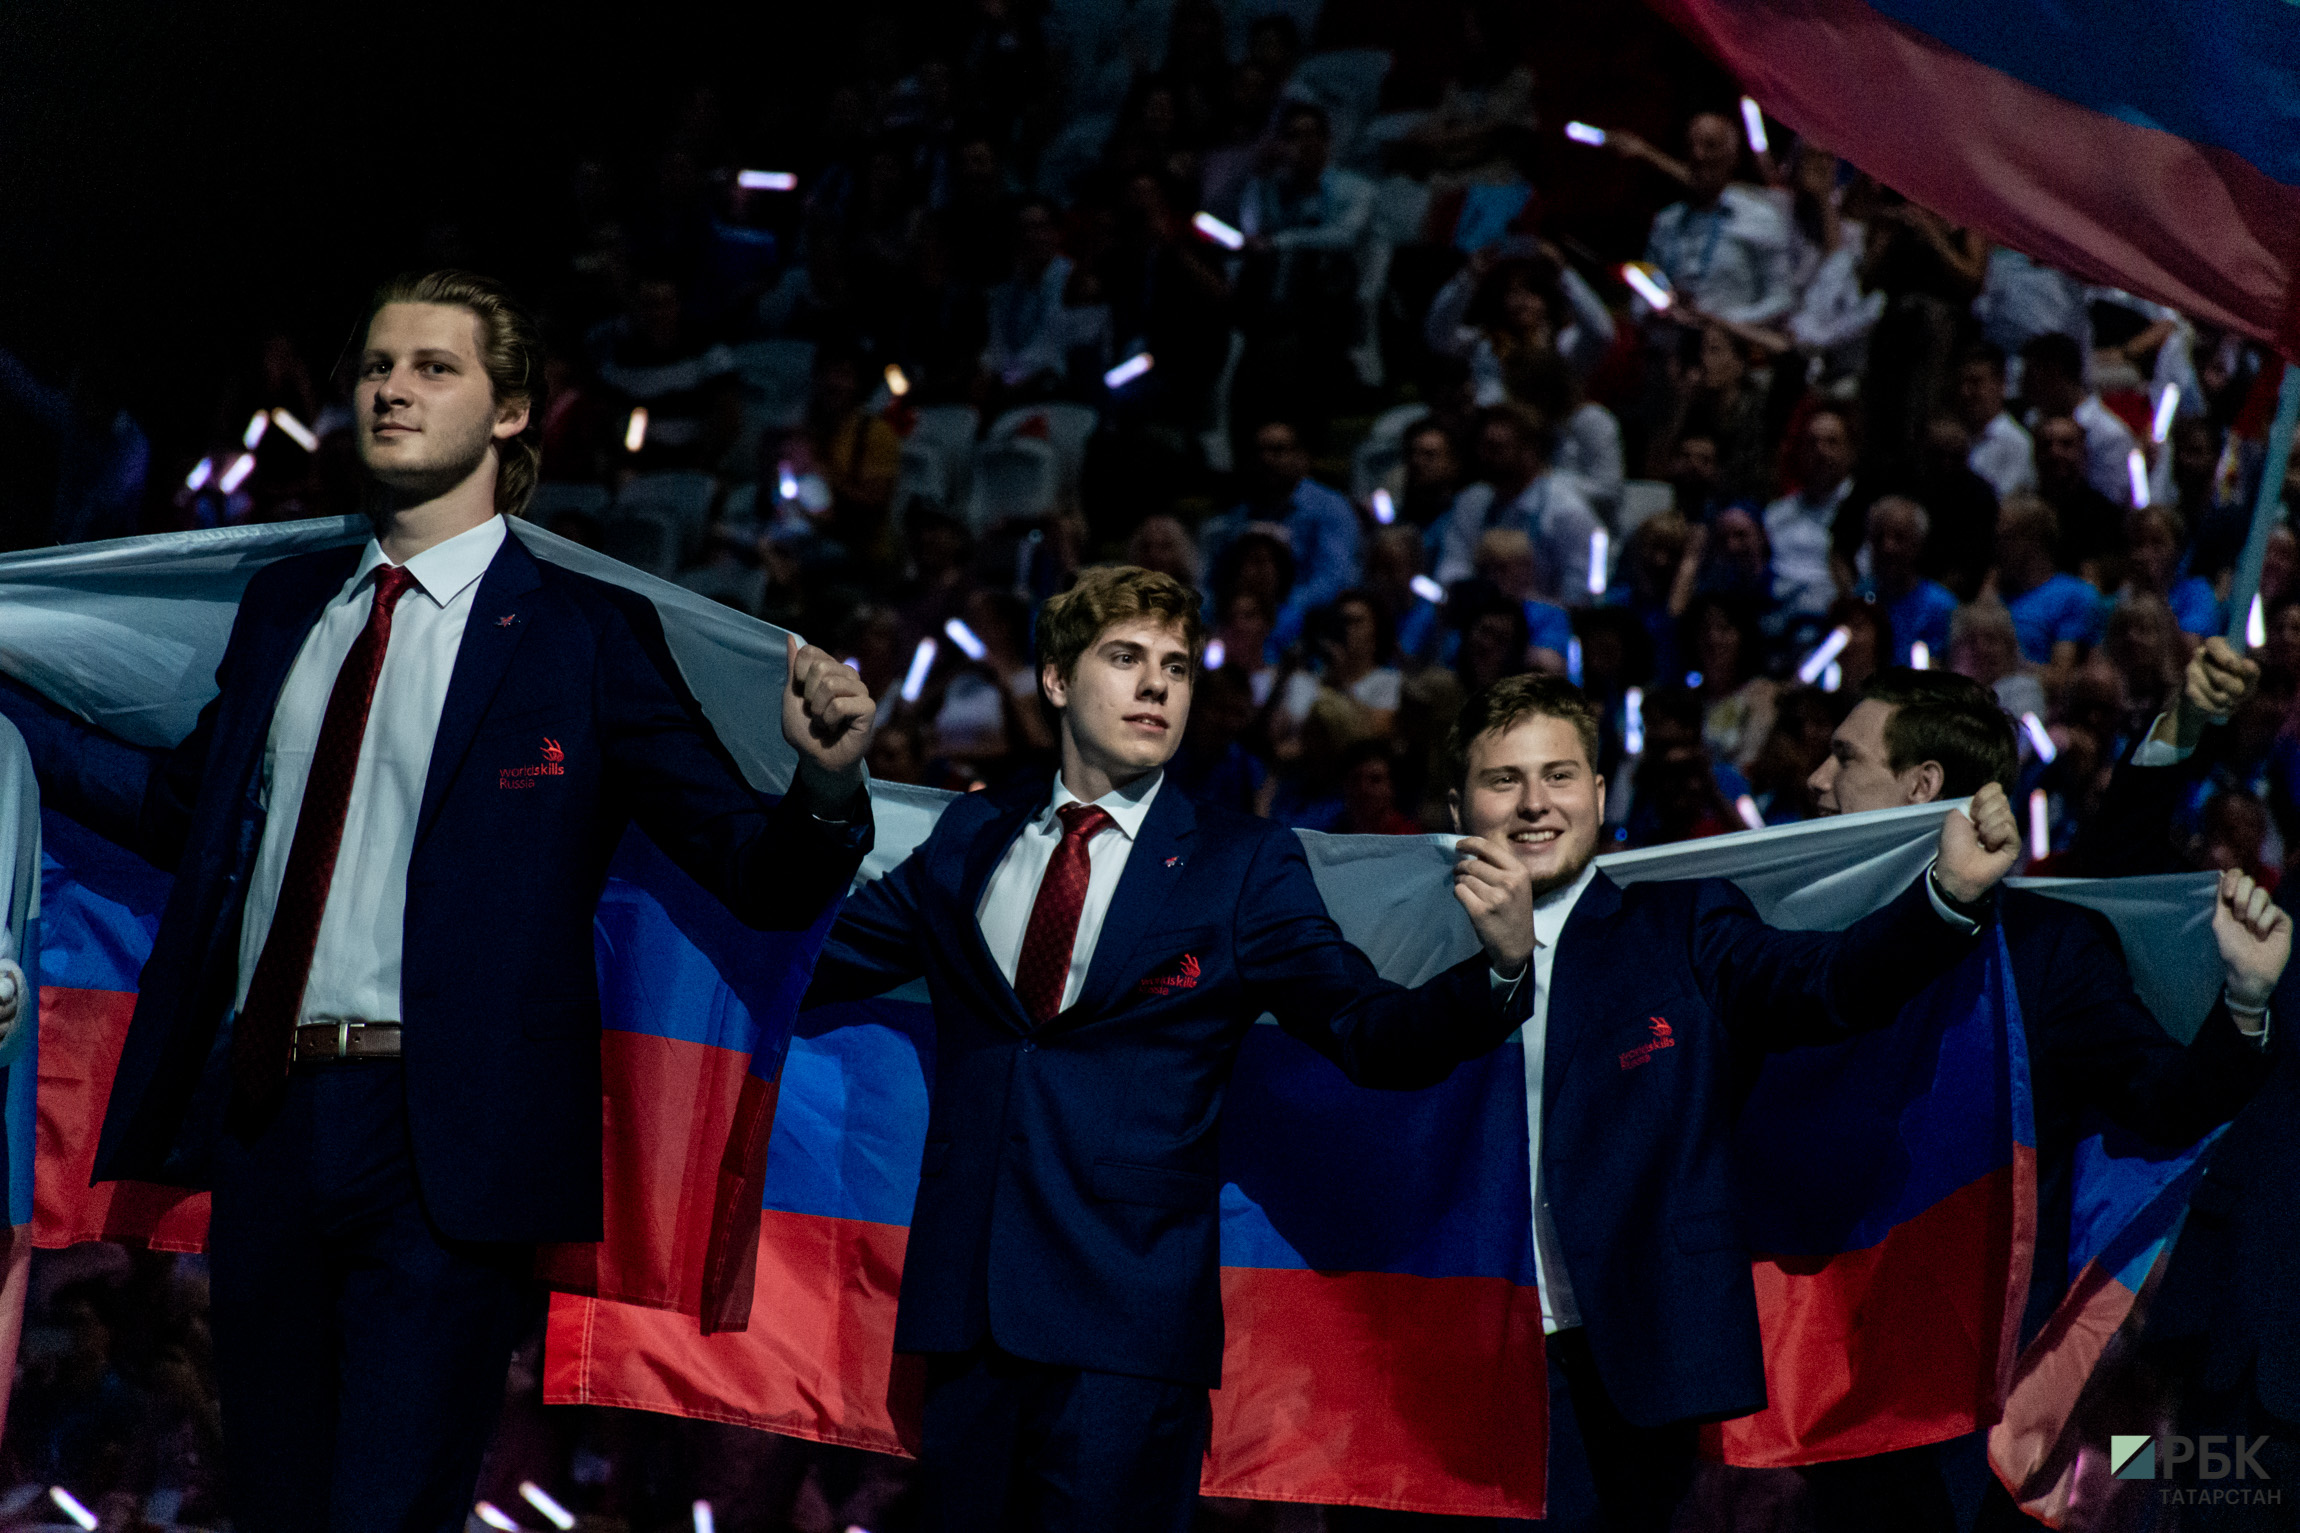 Шоу открыл традиционный для международных мероприятий парад команд. В Казань приехали представители 63 стран.